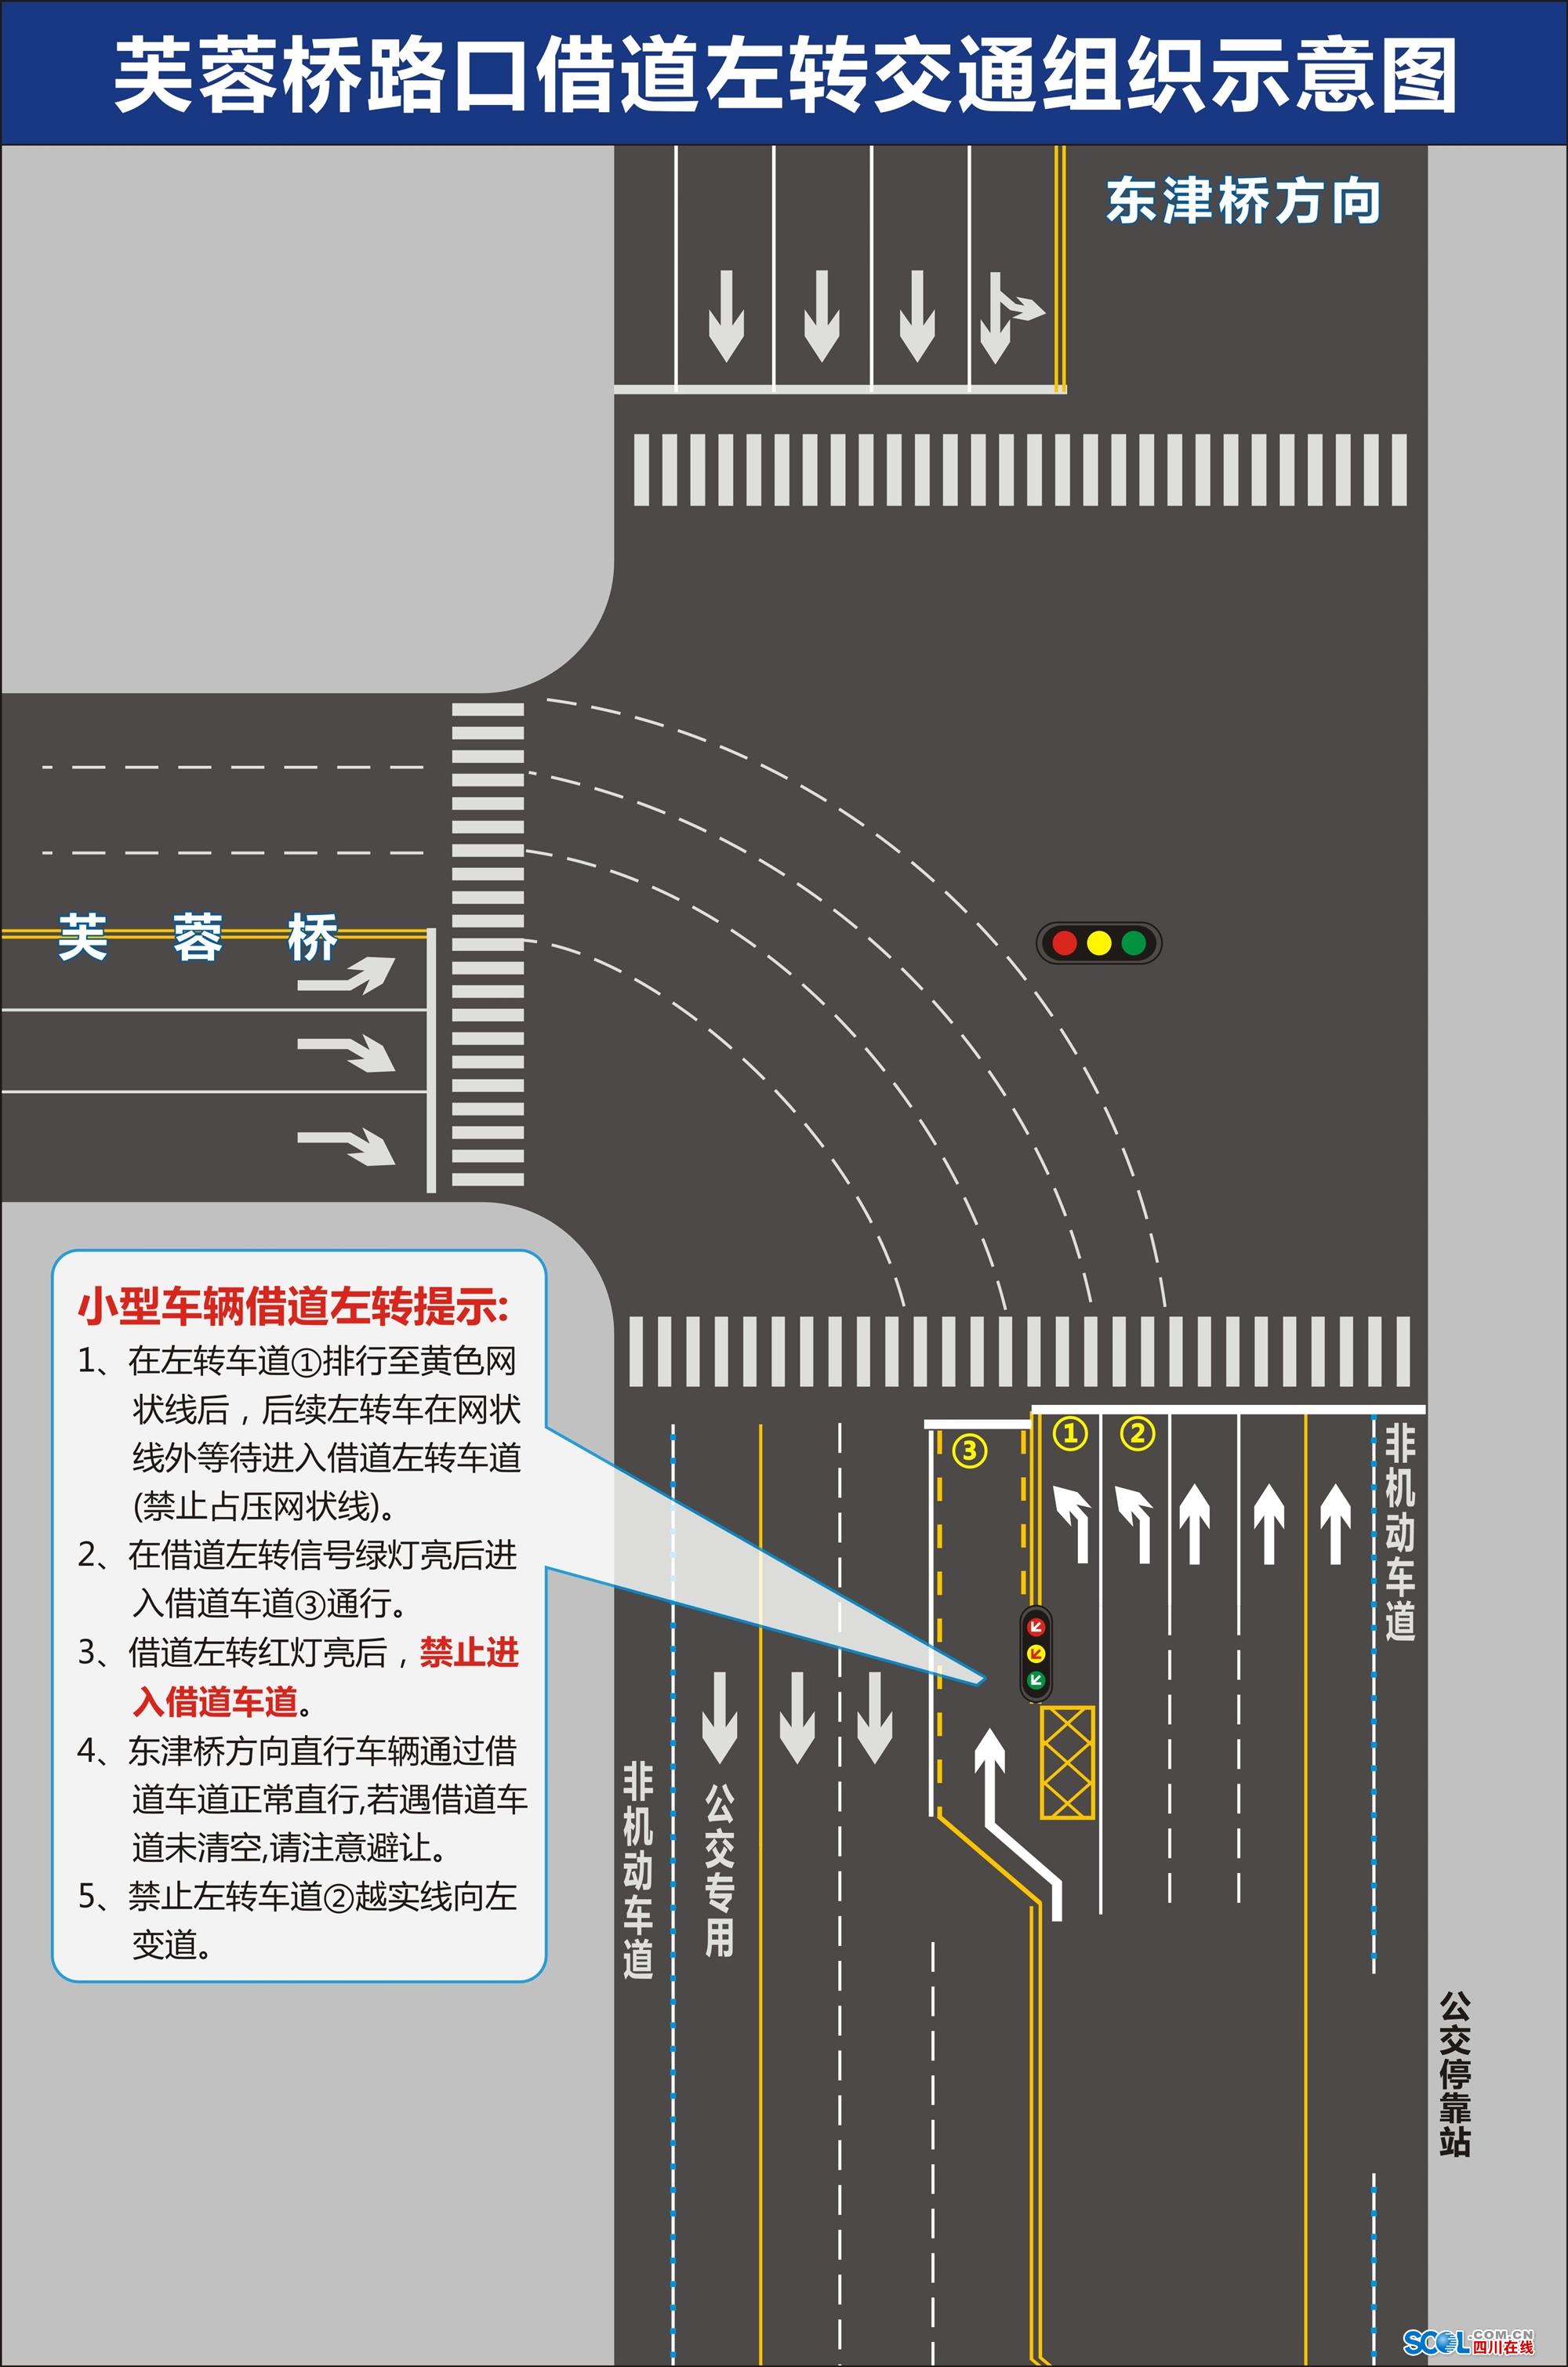 兩段式左轉到底哪裡不好？11 張圖看懂為什麼台灣不該再逼機車騎士「強制兩段式左轉」 | CitiOrange 公民報橘